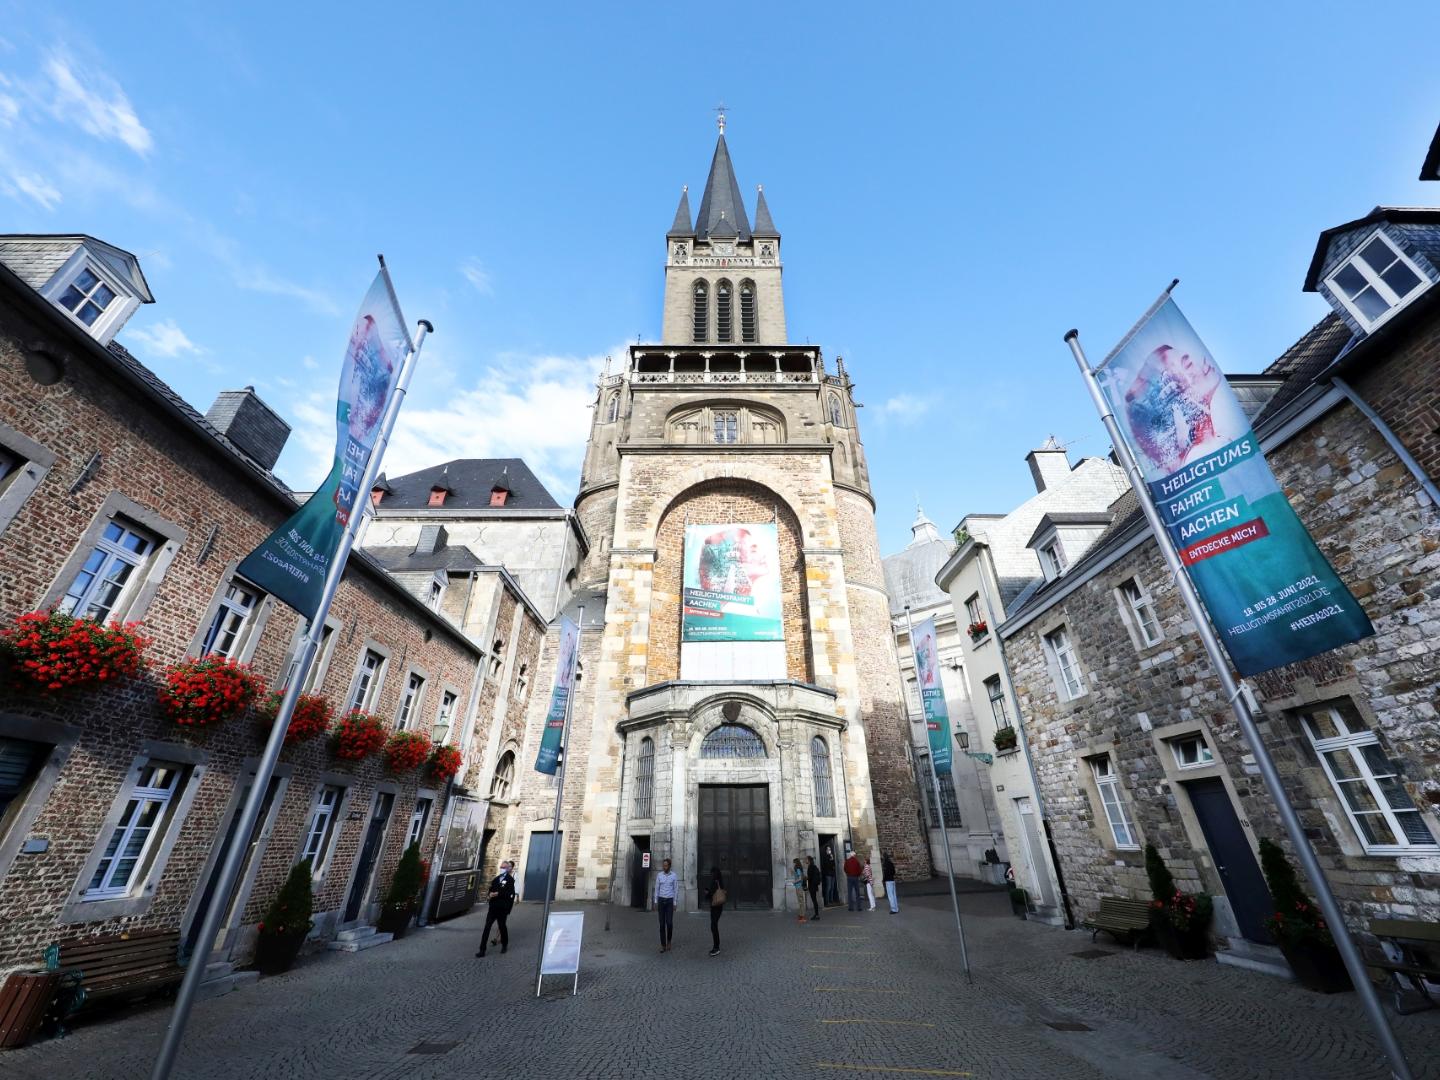 Rund um den Aachener Dom erstrahlt nicht nur auf zahlreichen Fahnen das Grün der Heiligtumsfahrt: Über dem Hauptportal des Doms weist ein Großtransparent auf die Wallfahrt hin, die vom 18. bis 28. Juni 2021 stattfindet.